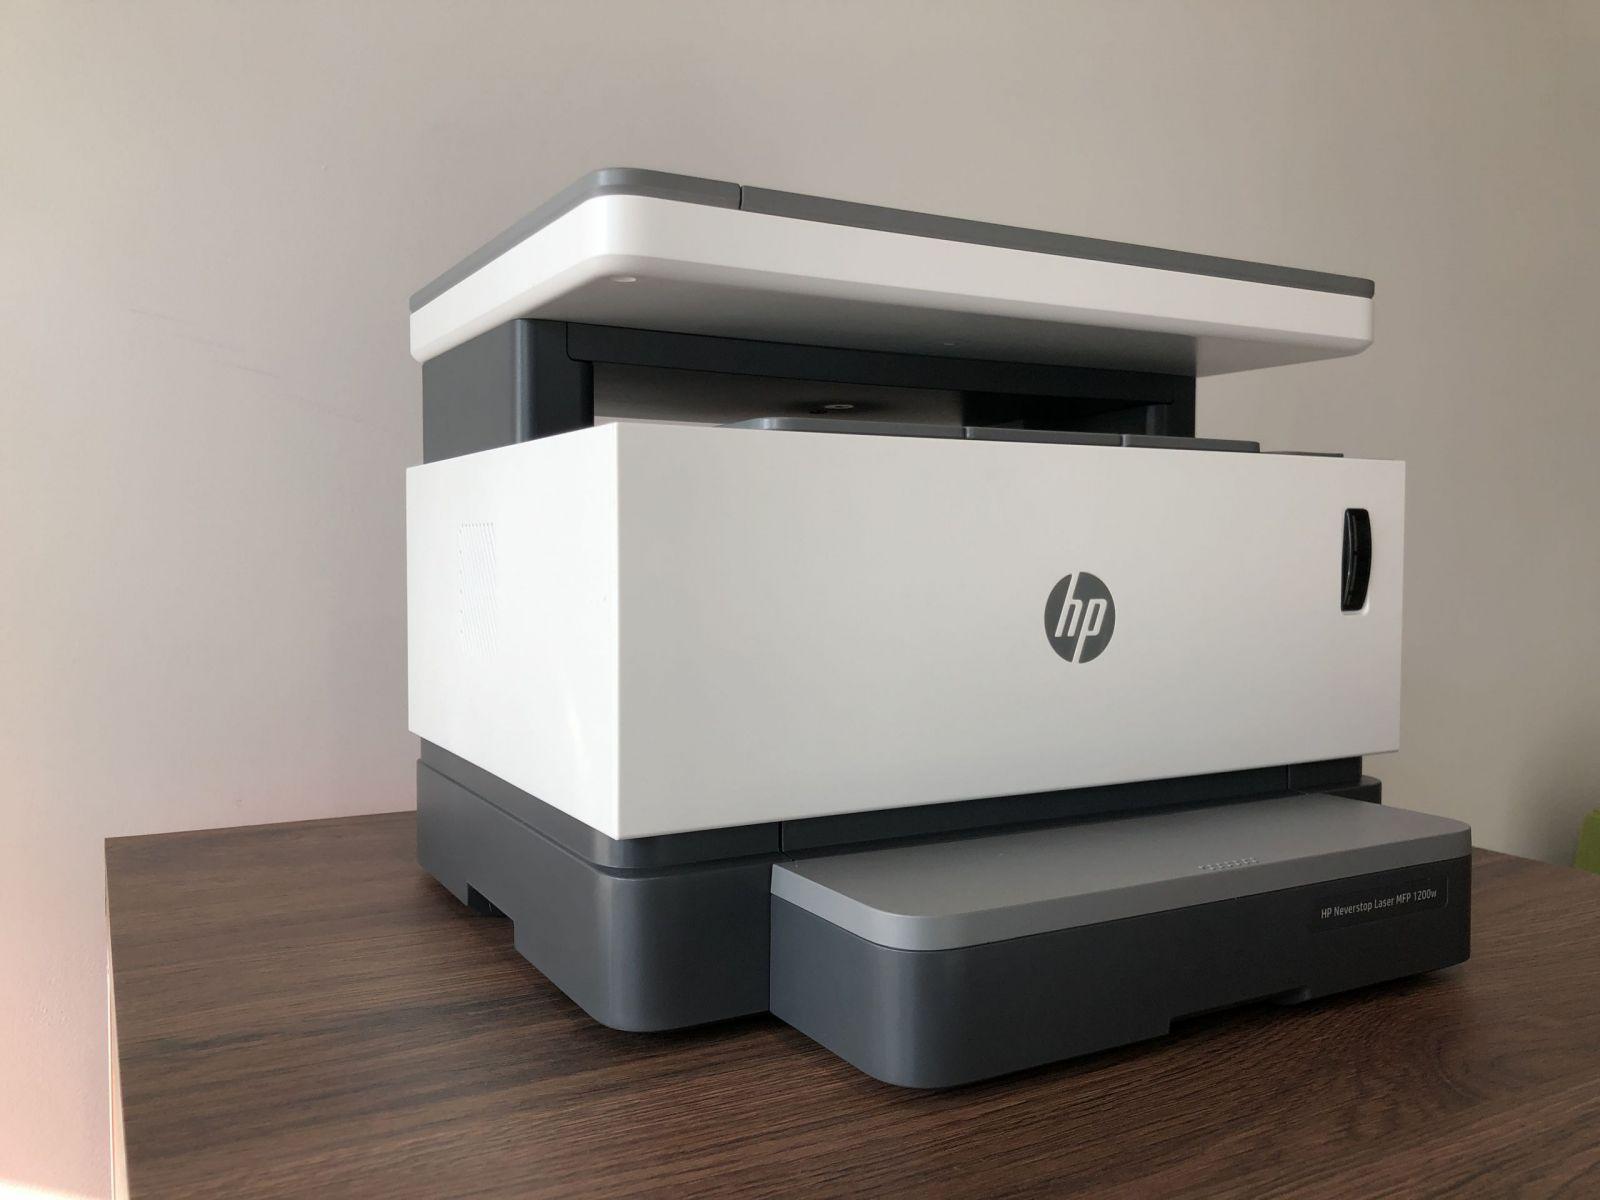 Печать без картриджа. Обзор МФУ HP Neverstop Laser 1200w (img 3098 scaled)